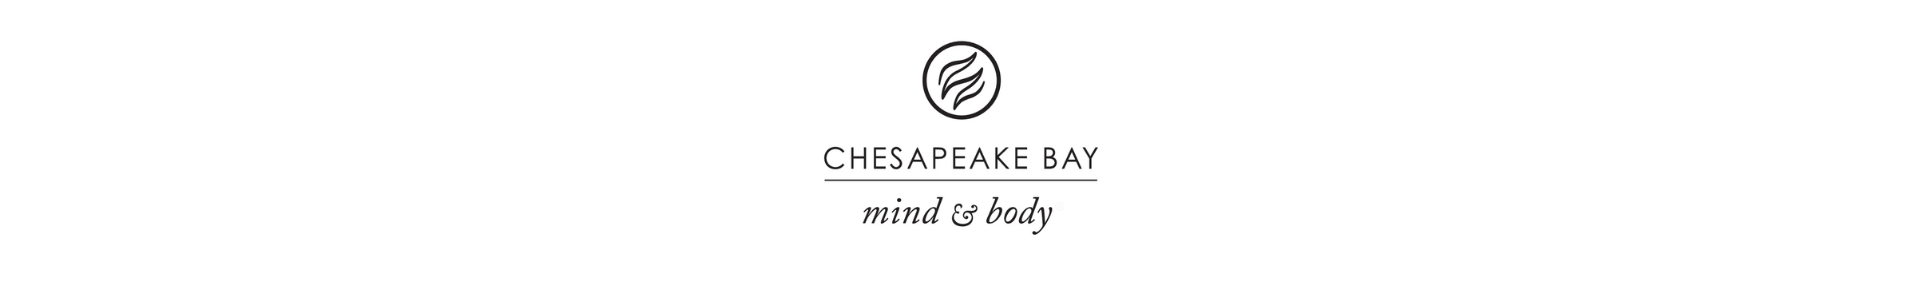 Świece zapachowe Chesapeake Bay logo